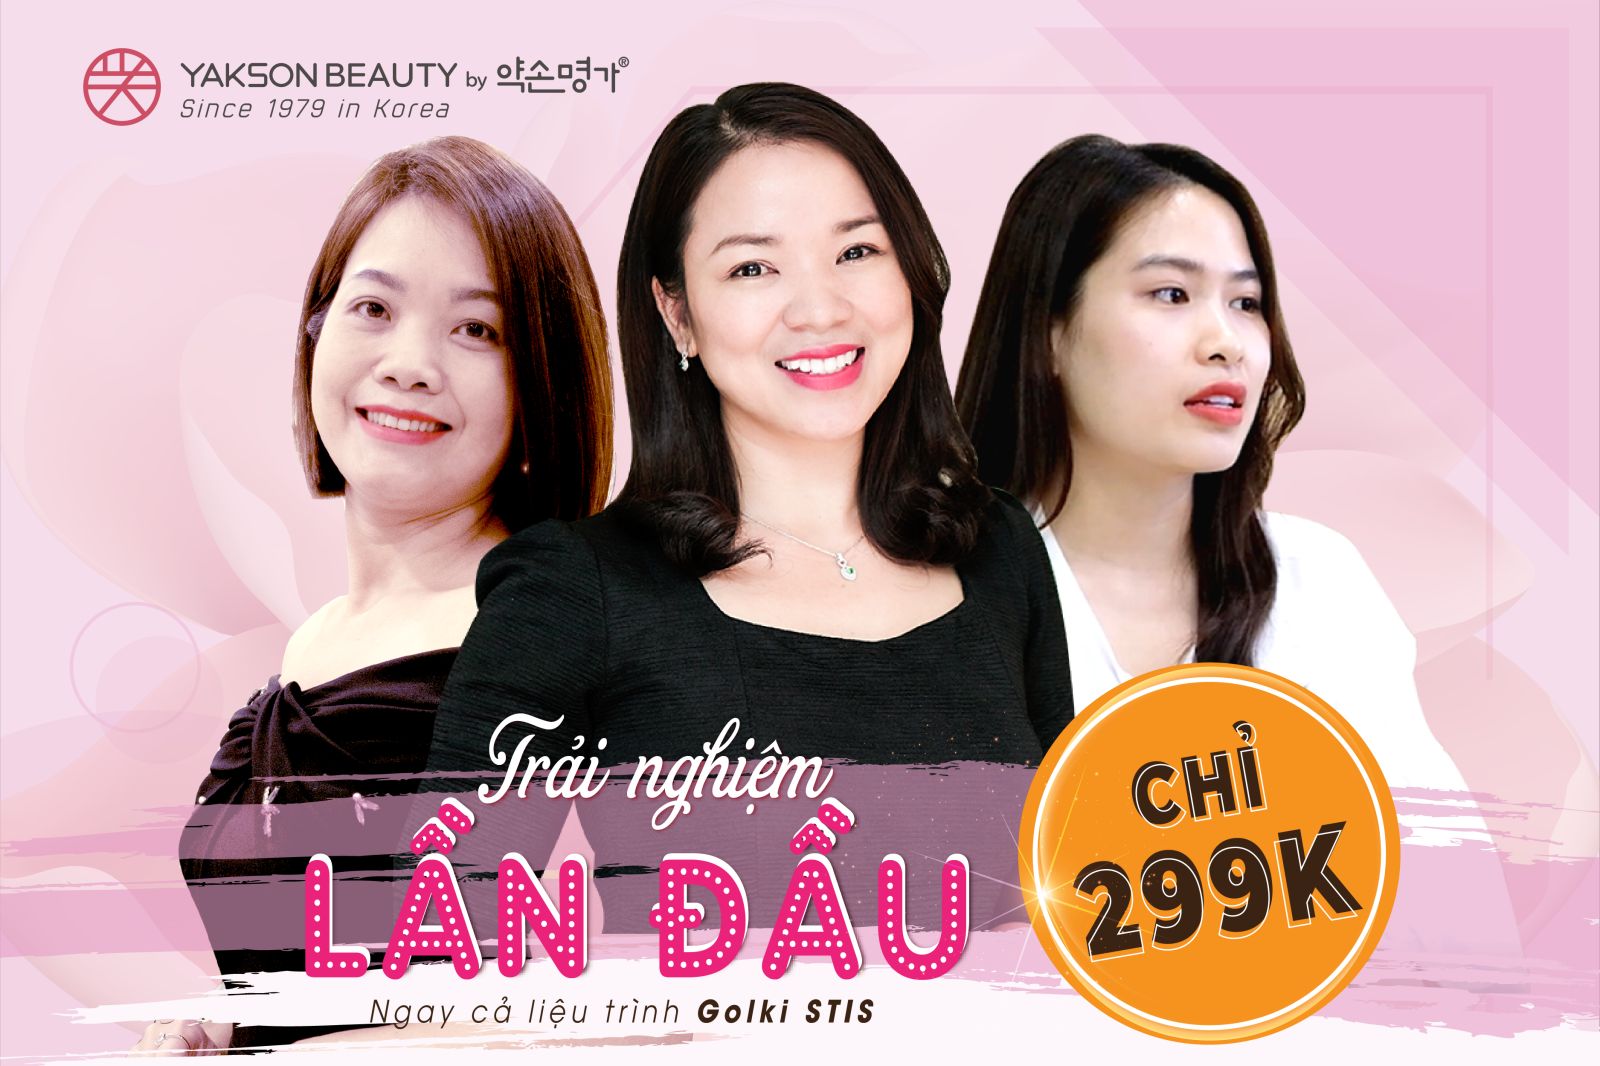 Top 8 Spa chăm sóc da mặt tốt ở Hà Nội được chị em lựa chọn nhiều nhất -  YAKSON BEAUTY